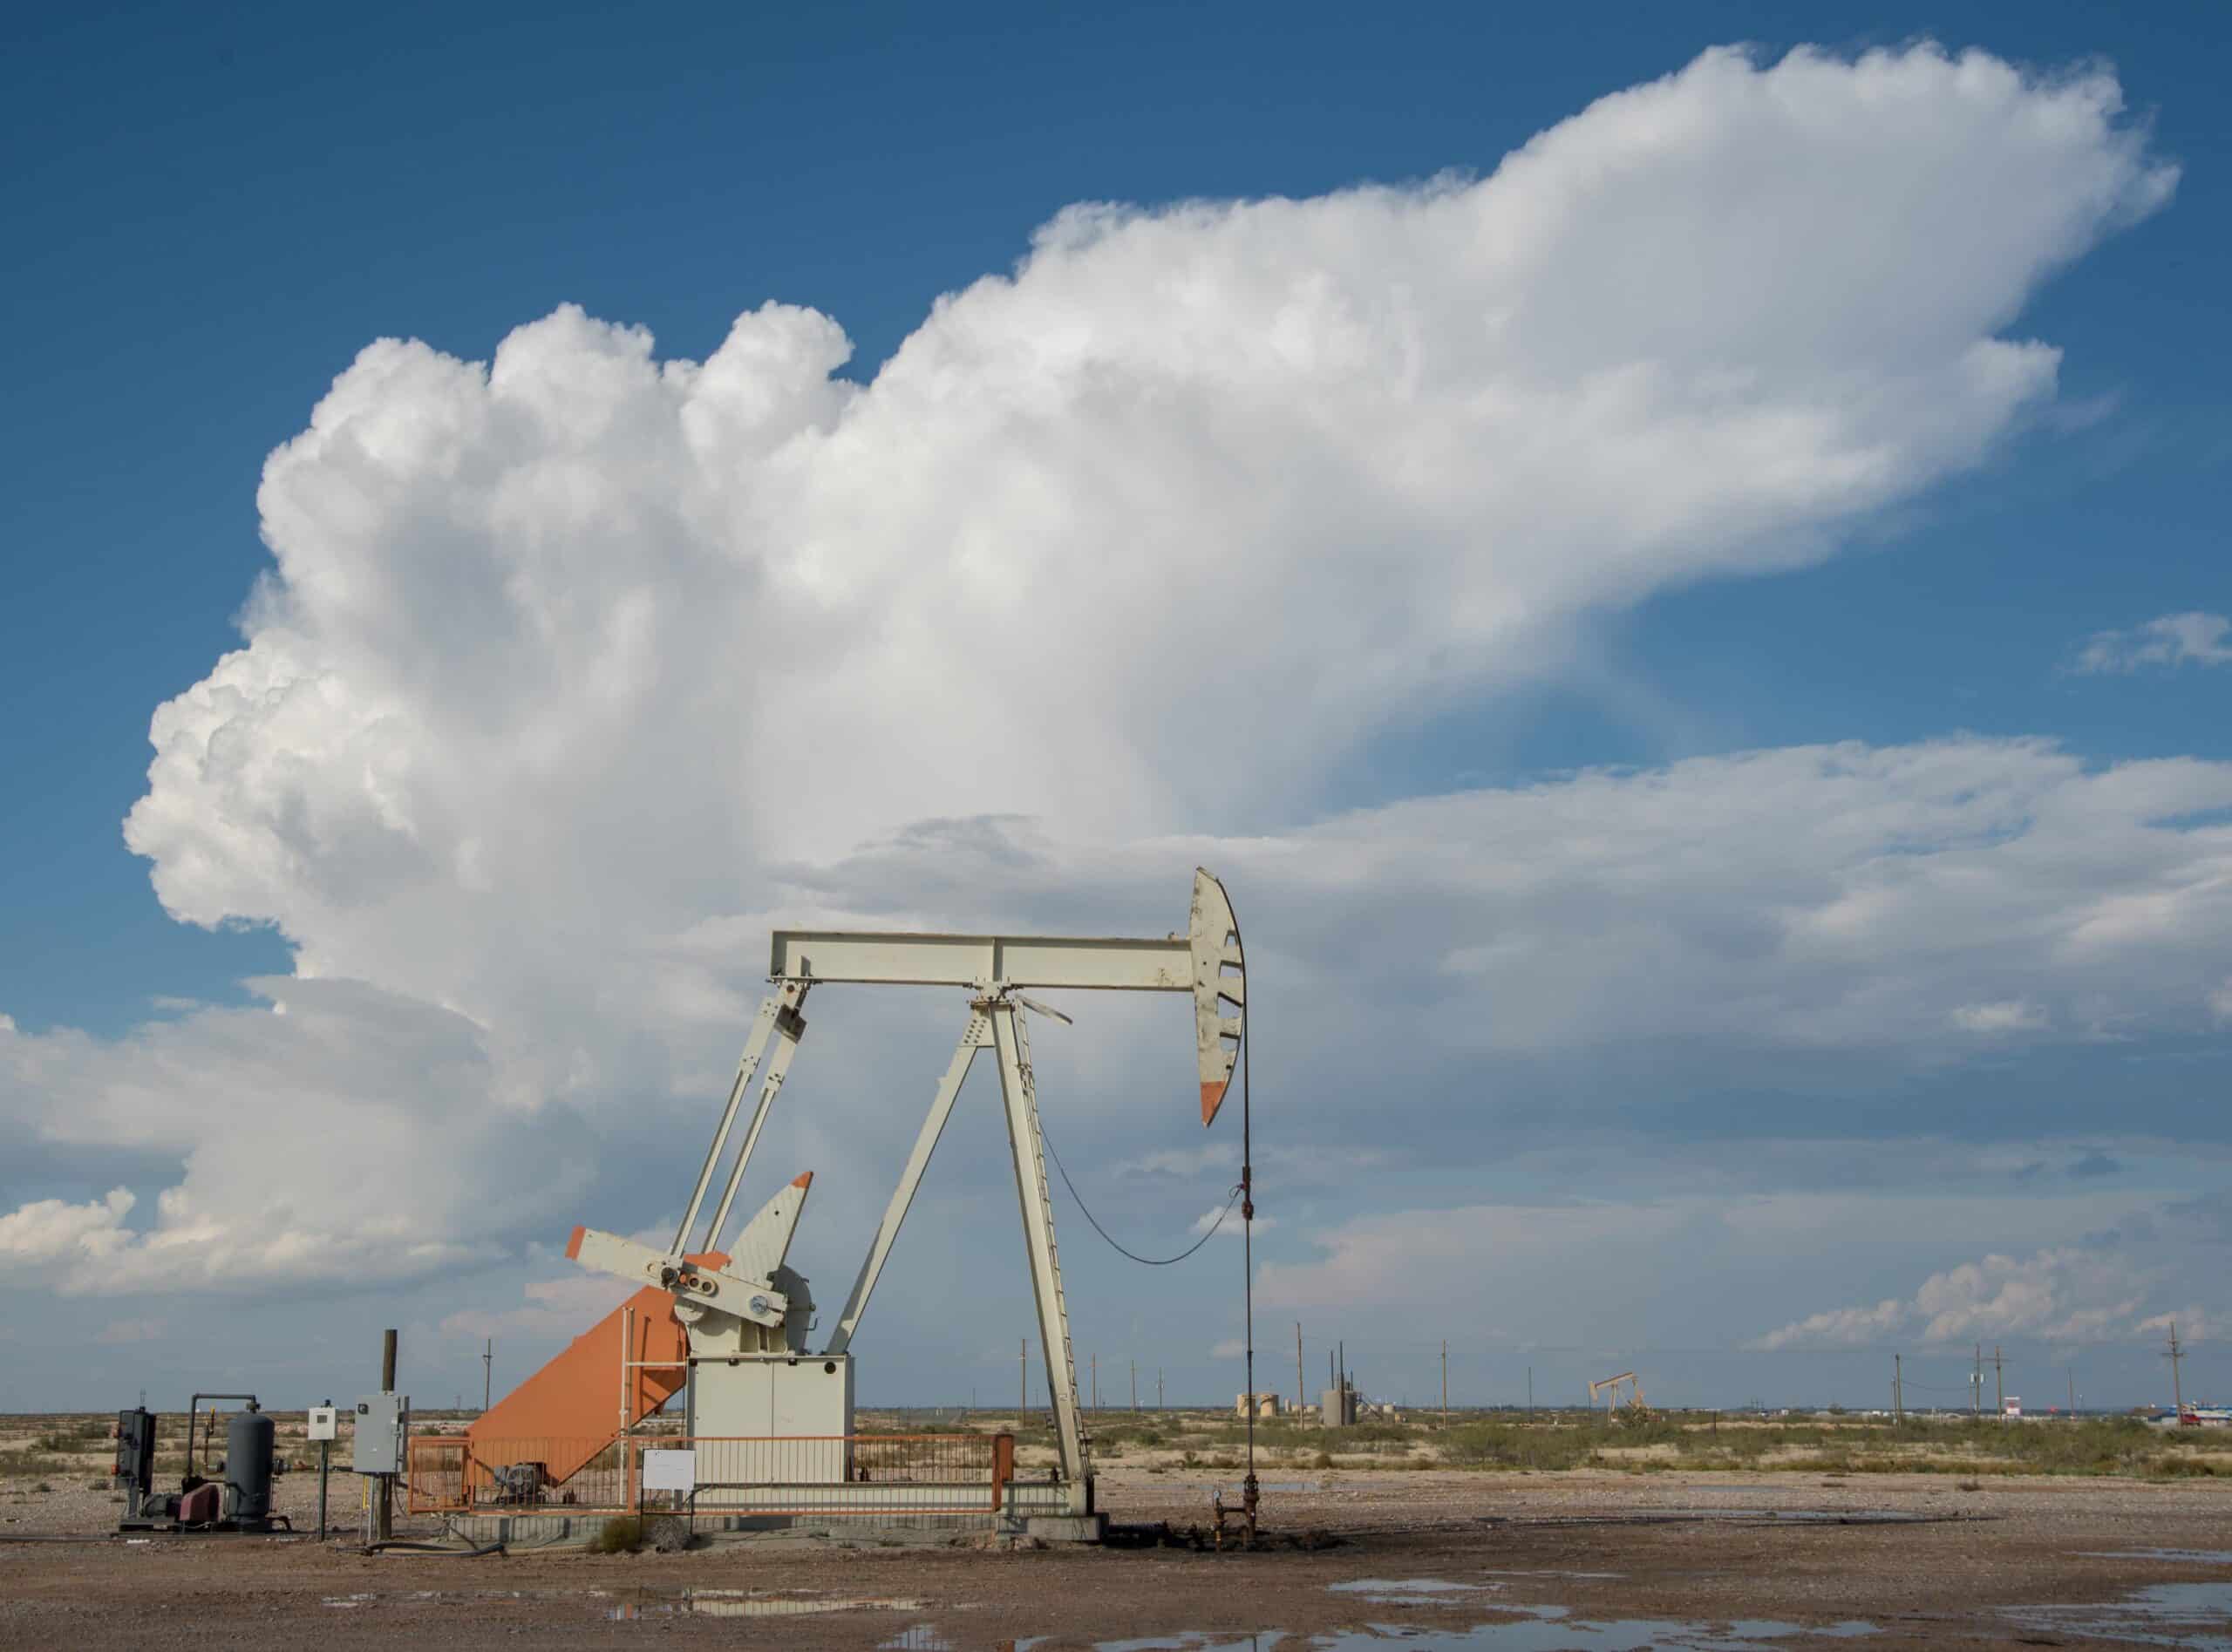 Midland, Texas | Oil pump jack